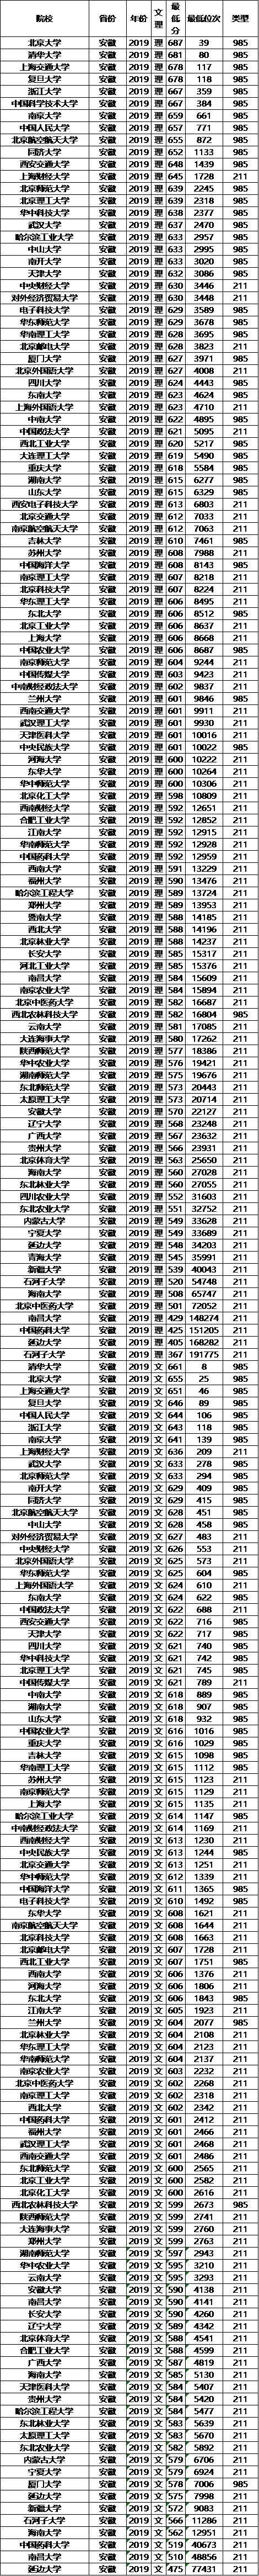 江苏安徽985大学名单（江苏安徽的大学）-图2